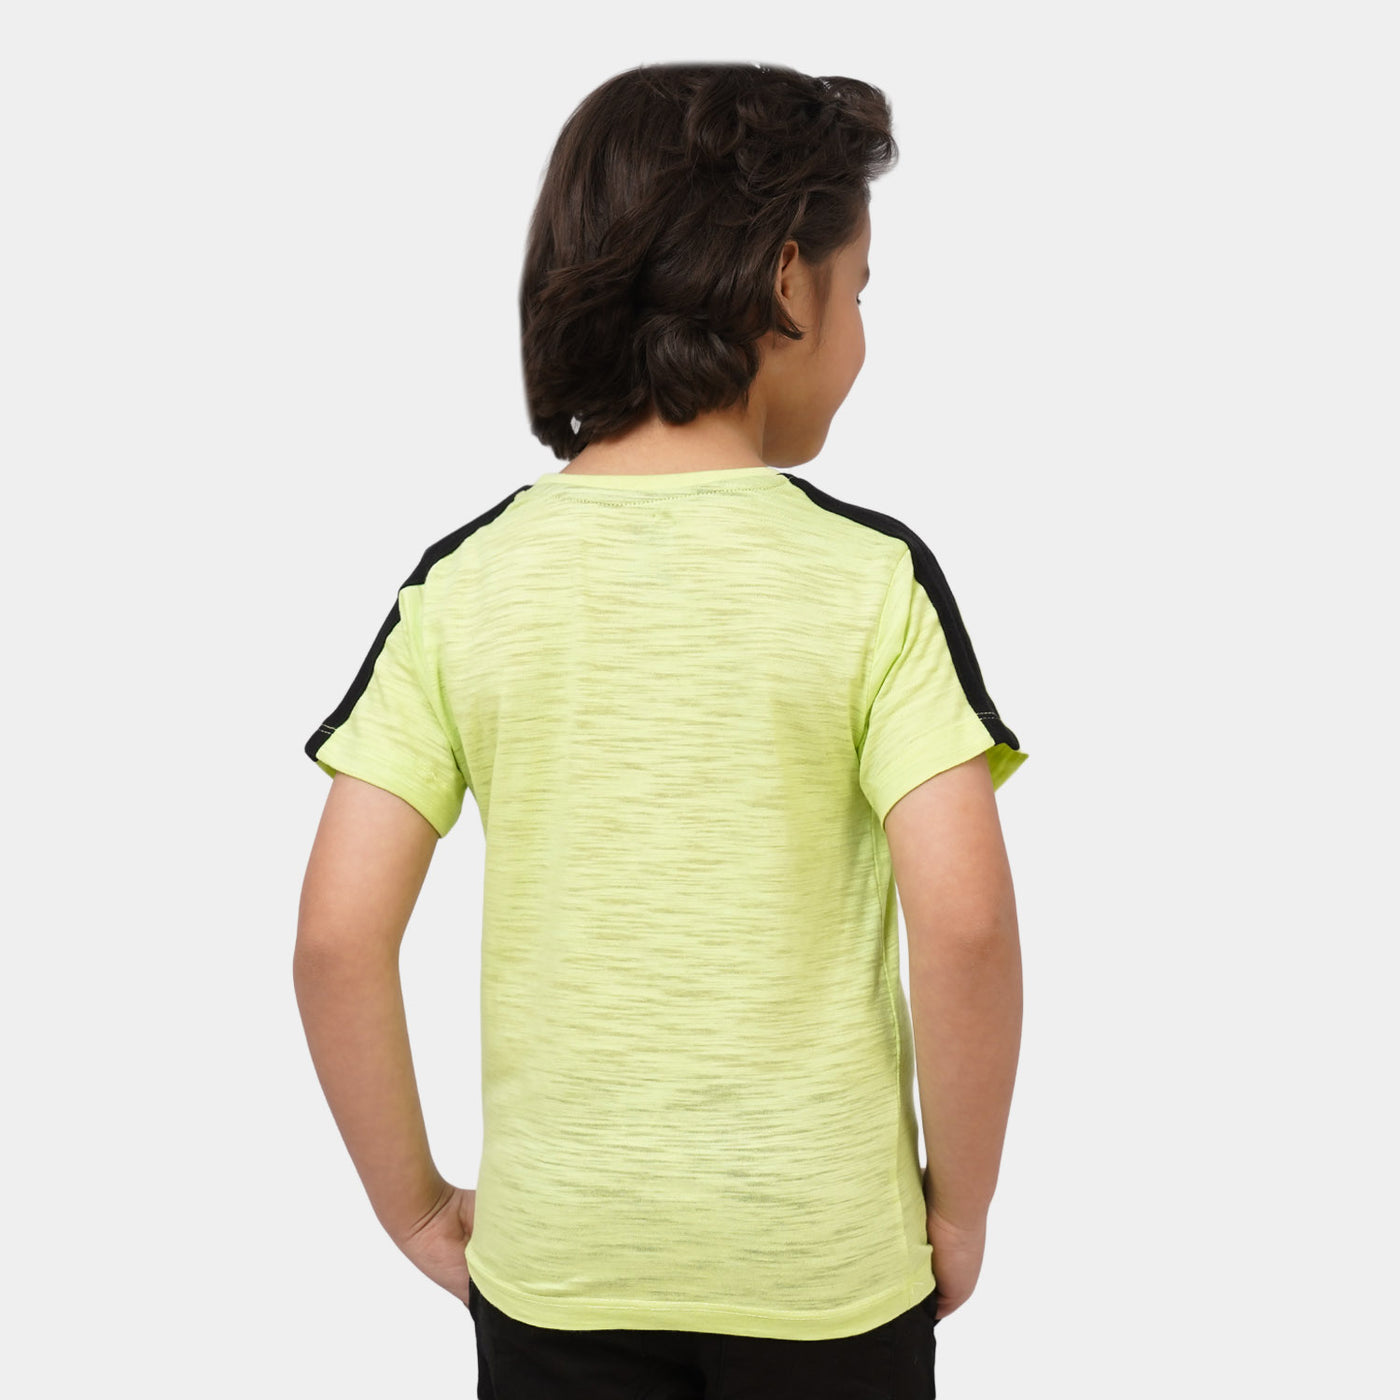 Boys Cotton T-Shirt Explorer - Sharp Green